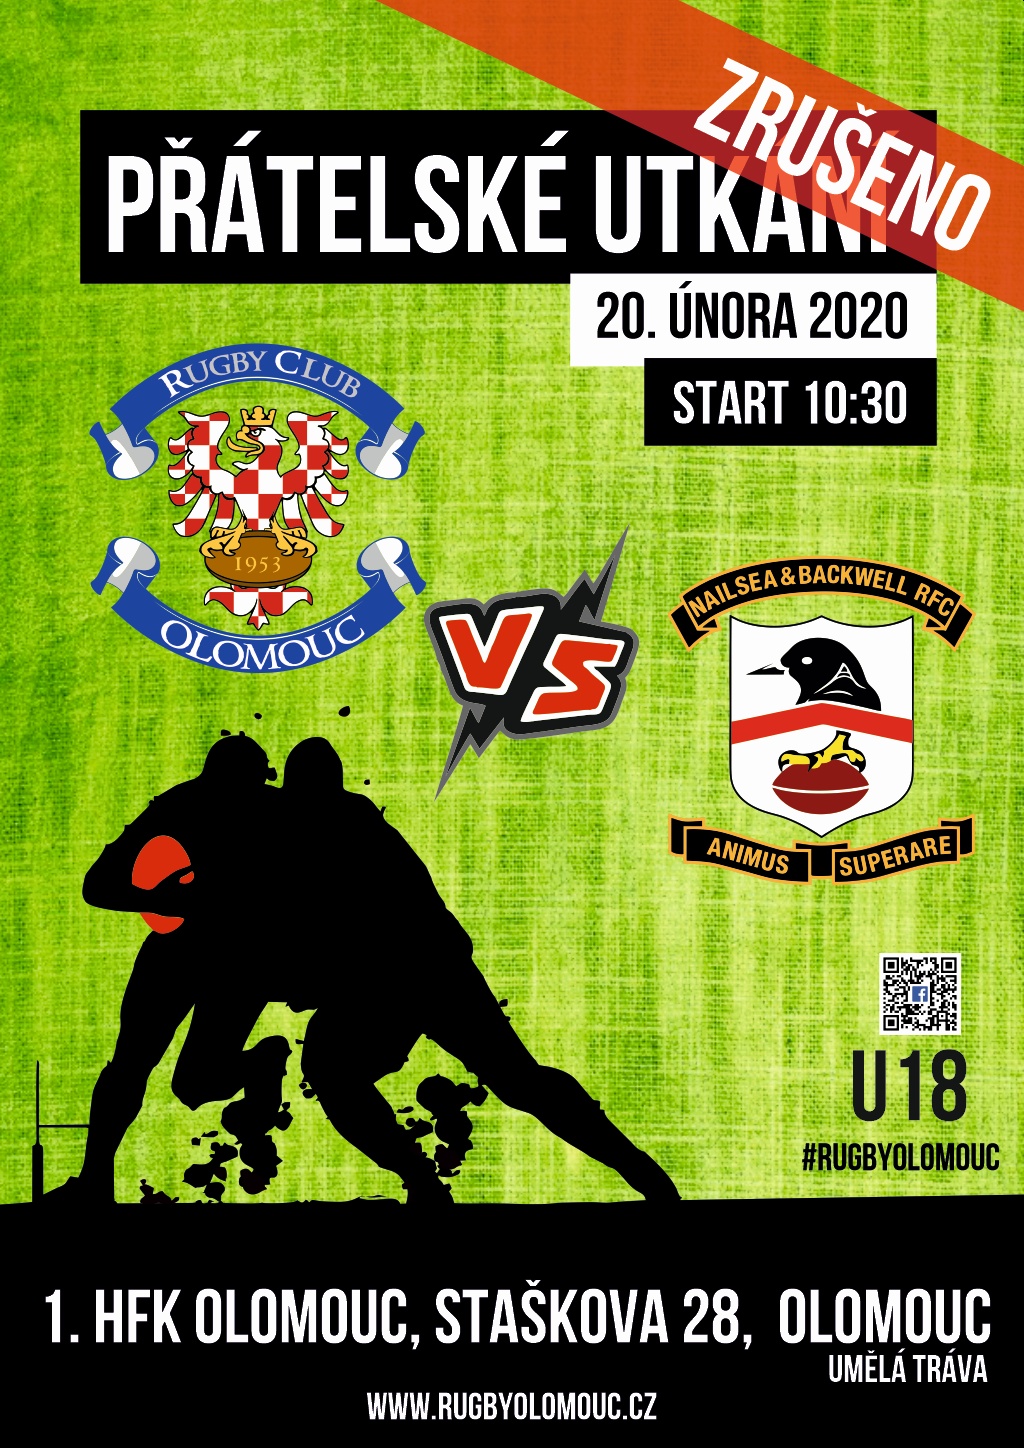 Přátelské utkání Rugby Olomouc vs Nailsea & Backwell RFC kat. U18